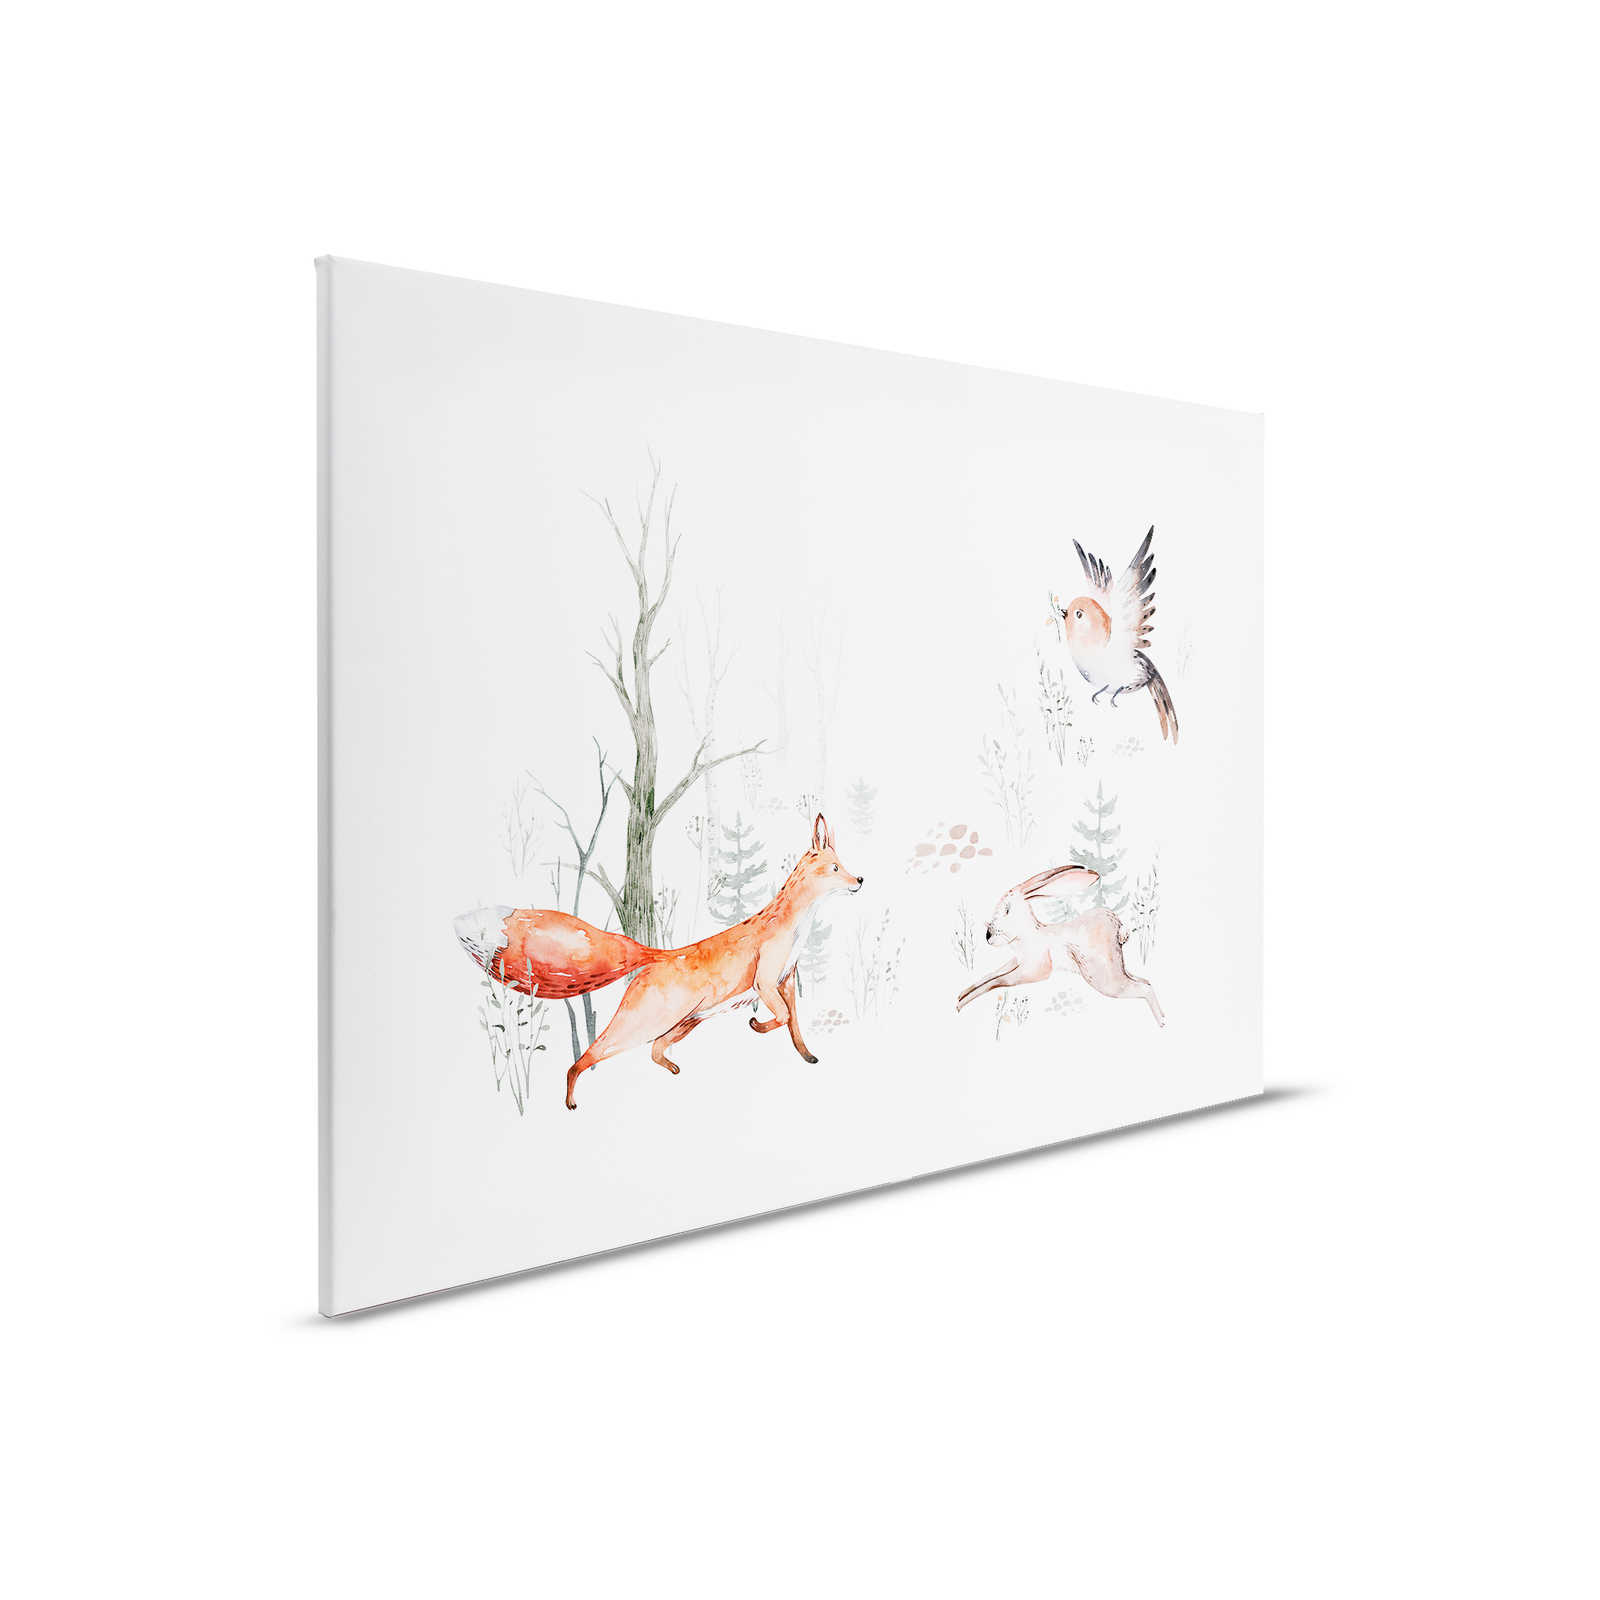 Leinwandbild mit Tieren im Wald fürs Kinderzimmer – 0,90 m x 0,60 m
